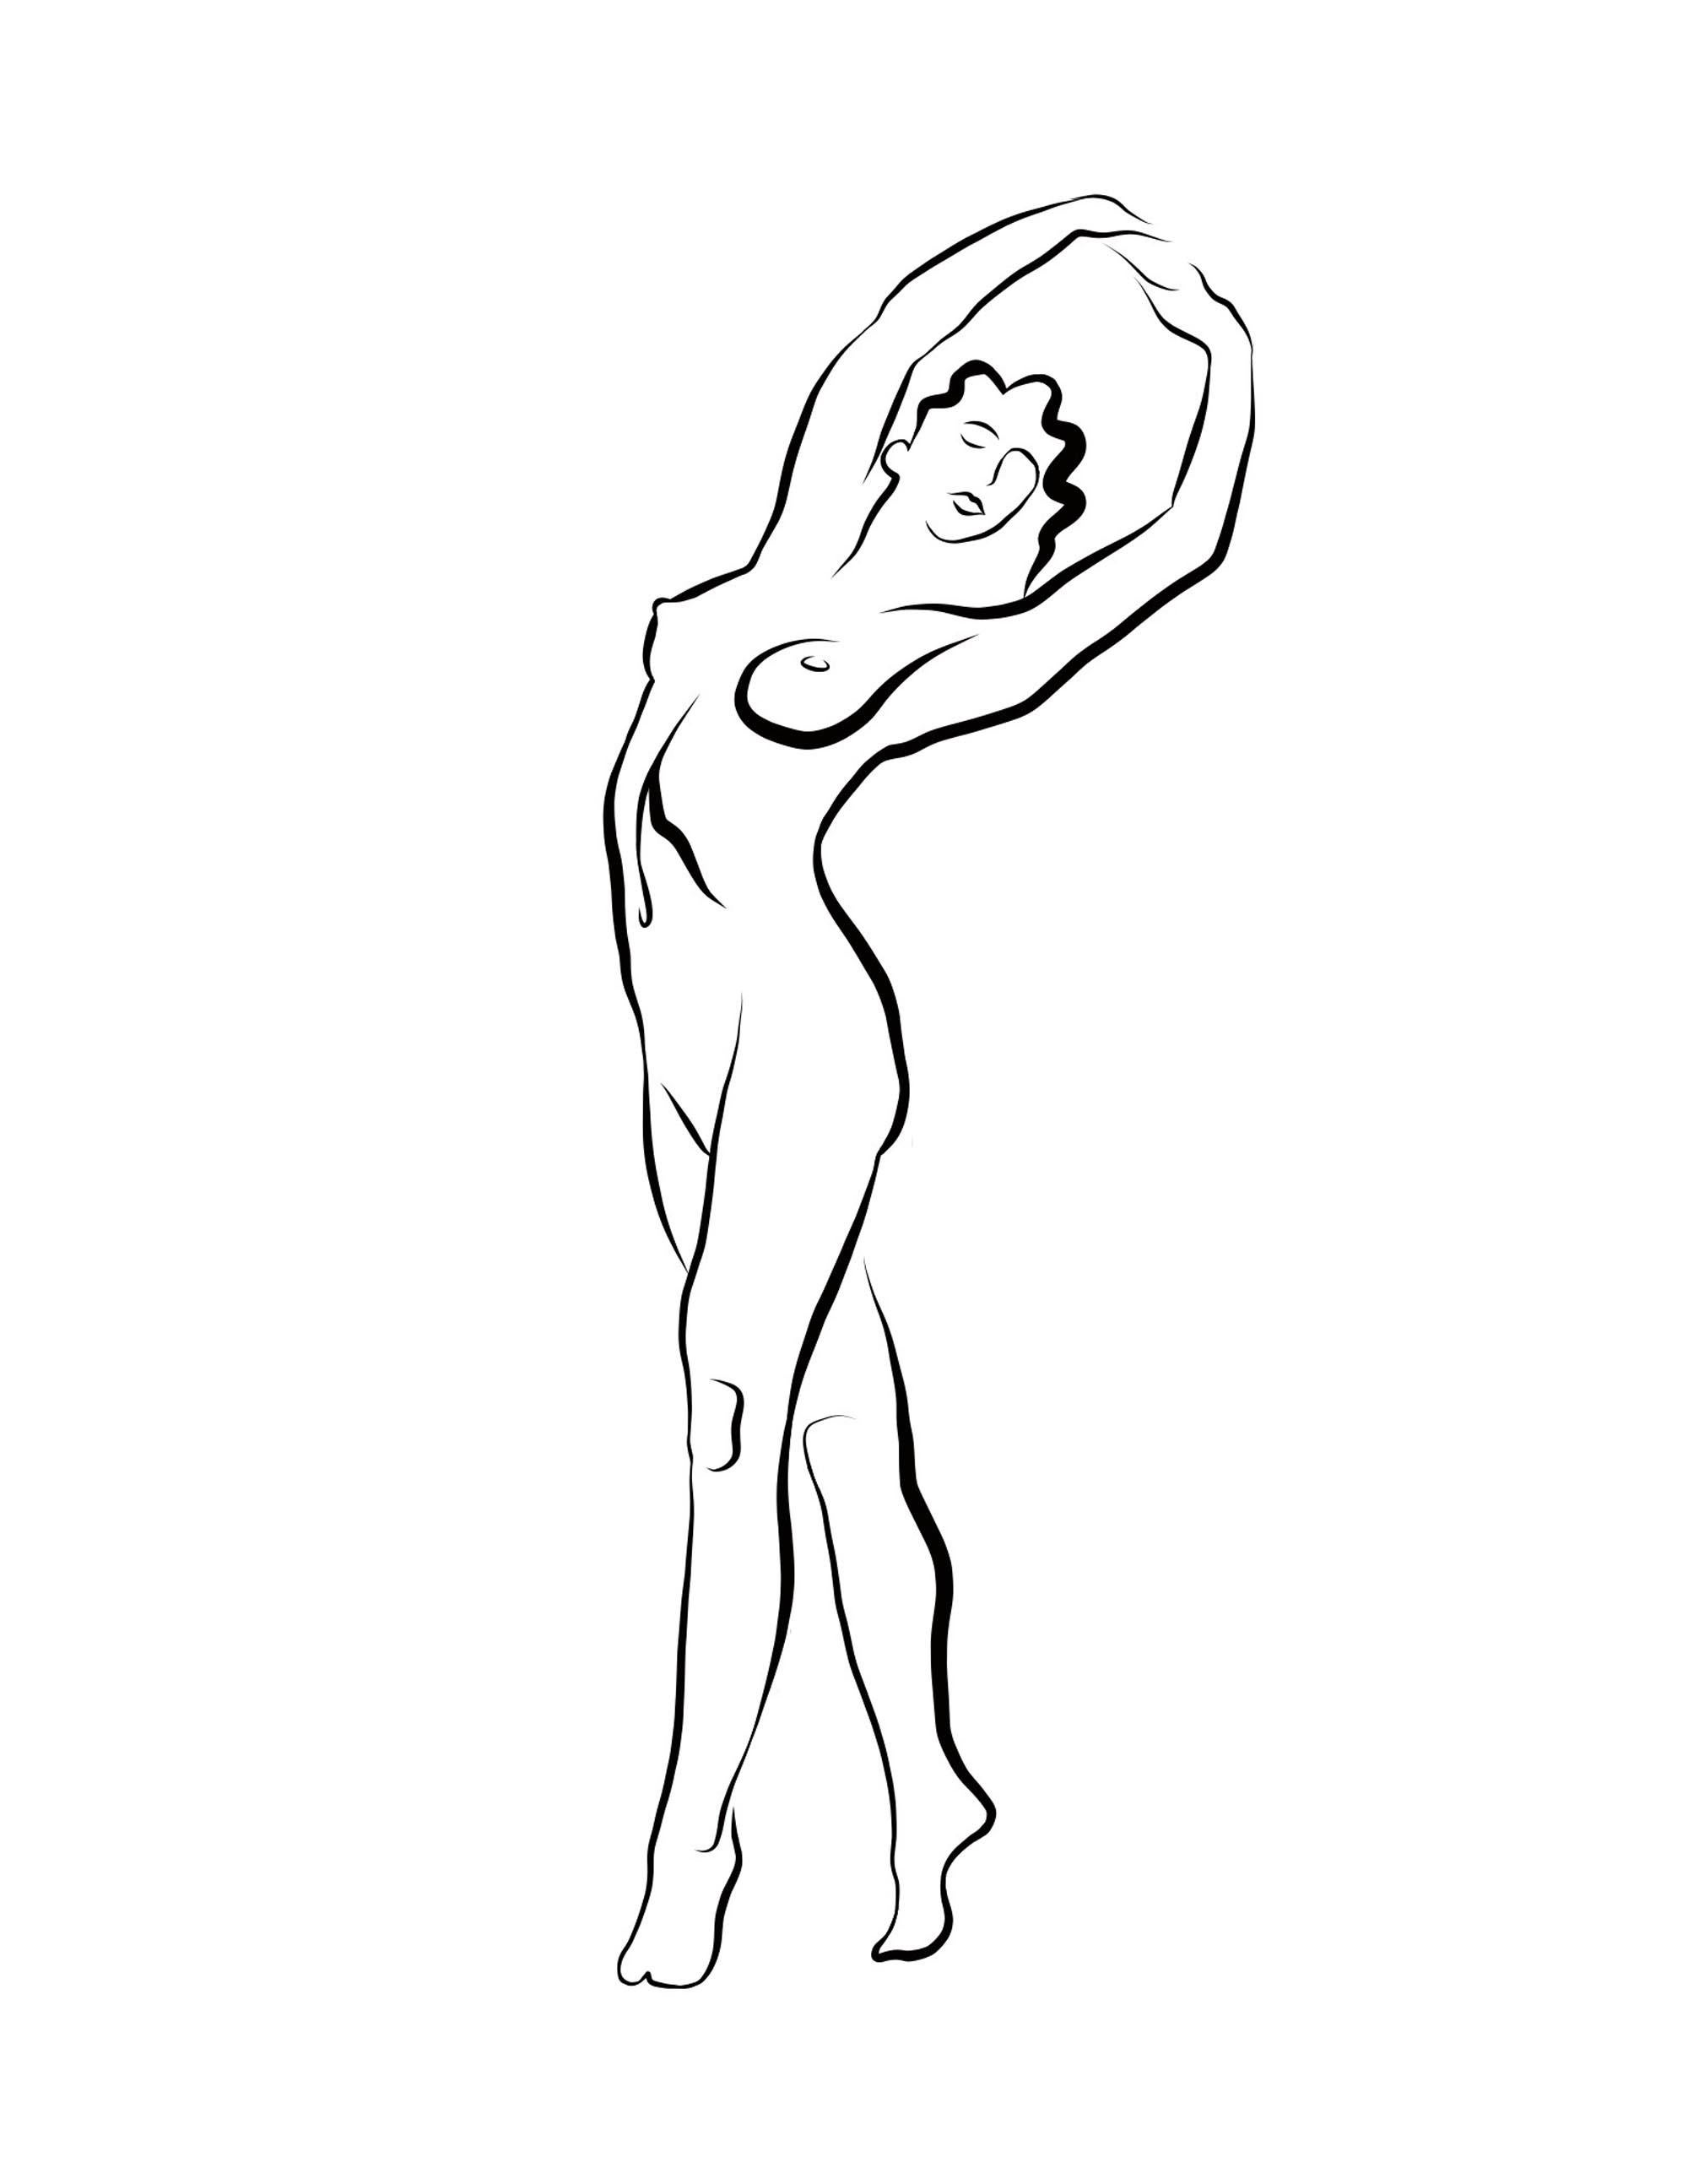 Michael Binkley Nude Print - Haiku #56, 1/50 - Digital Vector Drawing Standing Female Nude Woman Figure Arms 